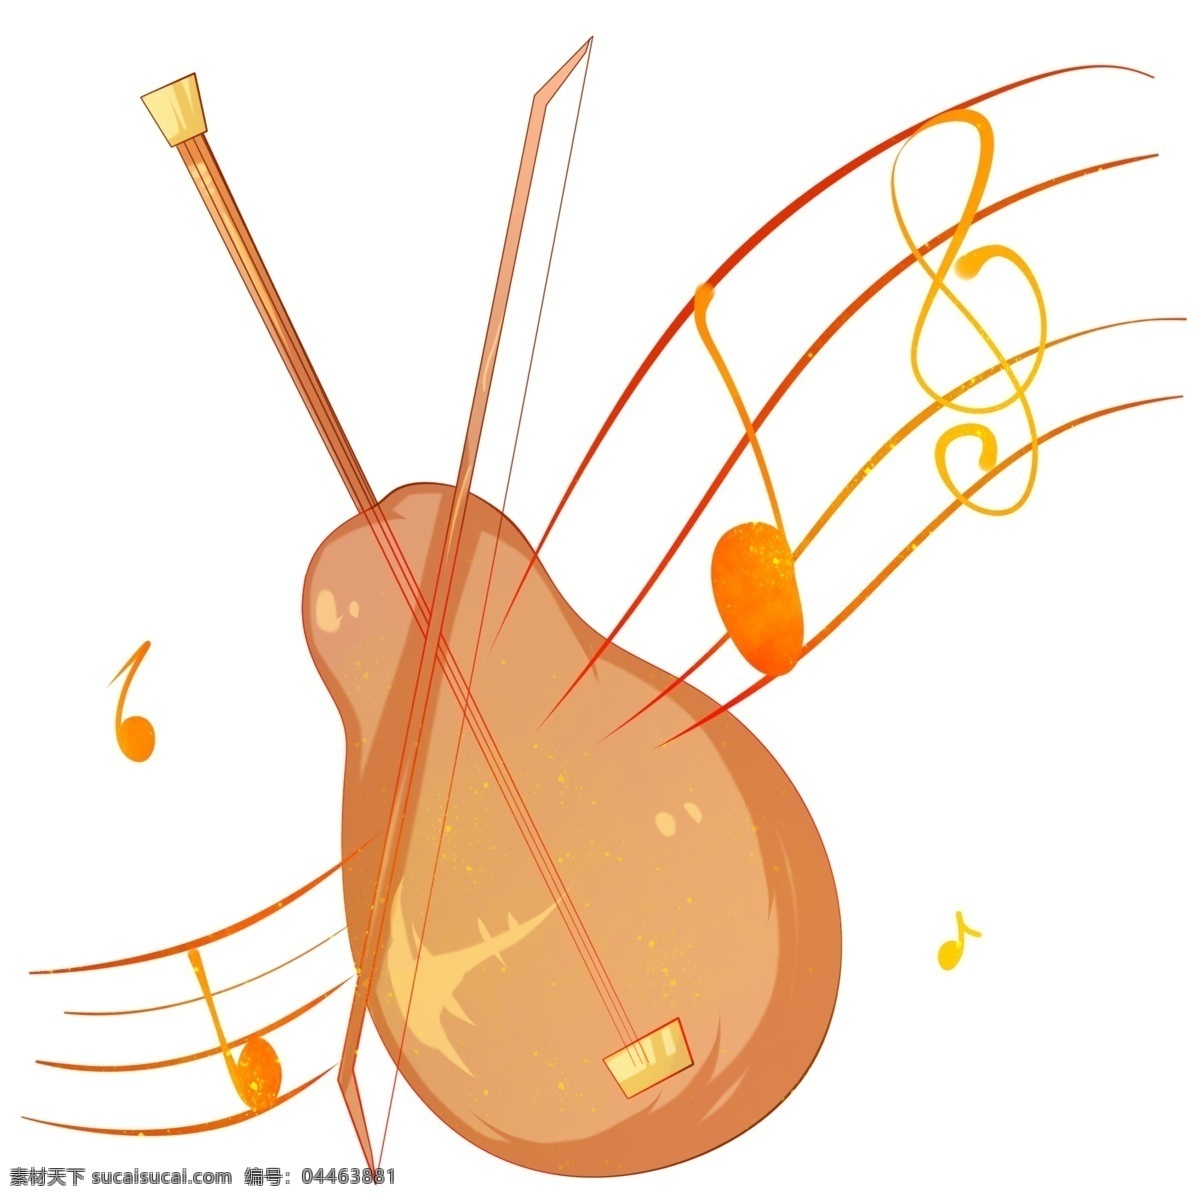 音乐 小提琴 插画 音乐小提琴 卡通插画 音乐工具 音乐乐器 音乐用品 娱乐插画 弹奏小提琴